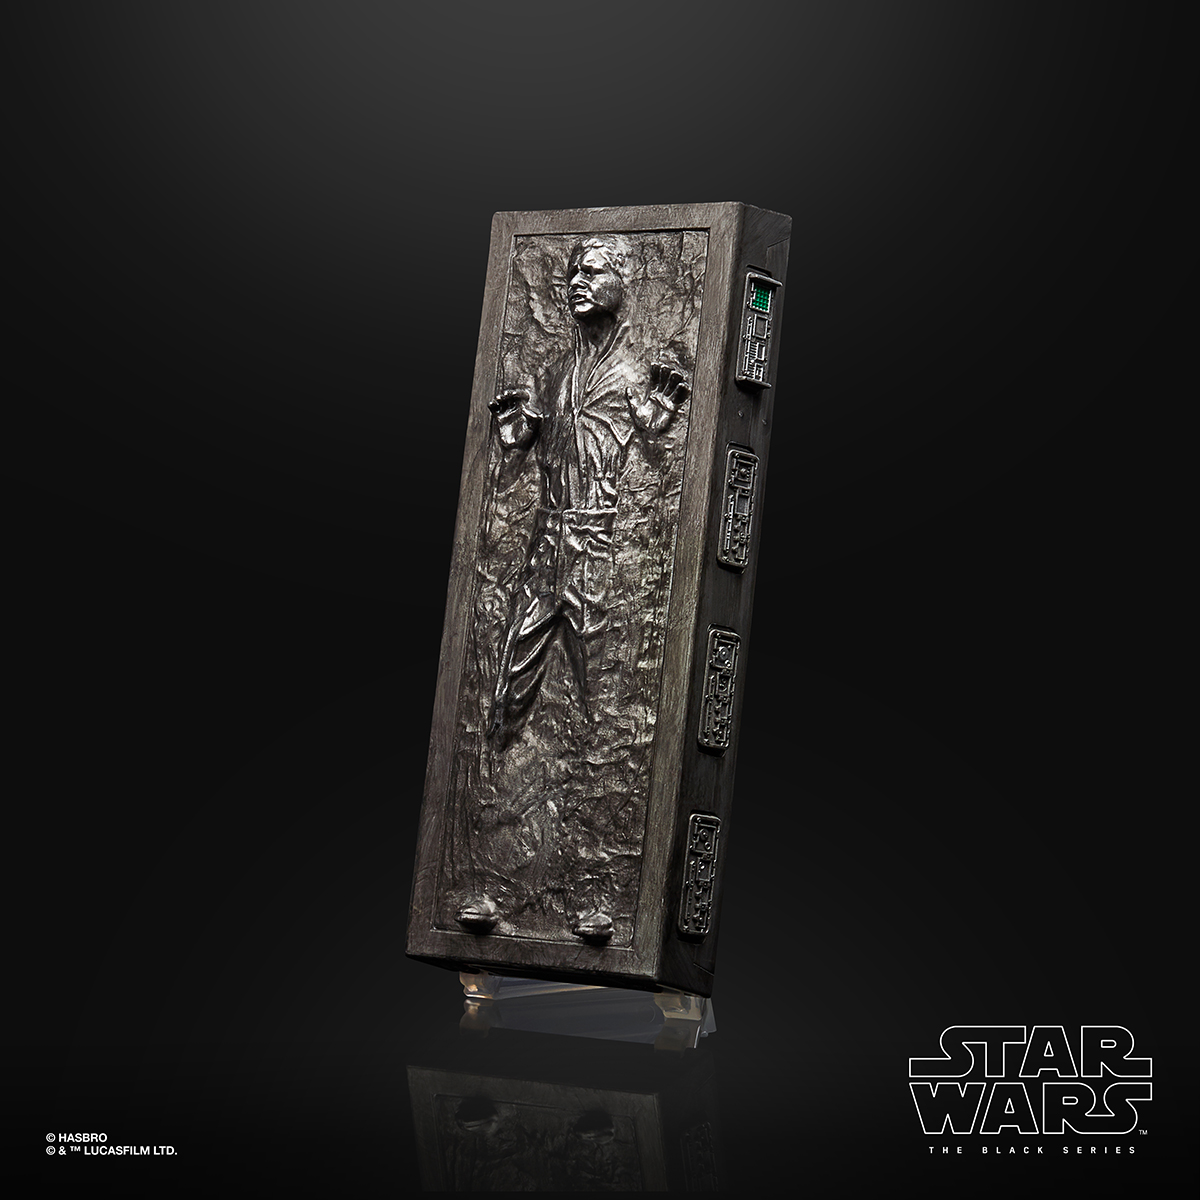 Star Wars The Black Series 6 Inch Han Solo Carbonite Figure Oop 4